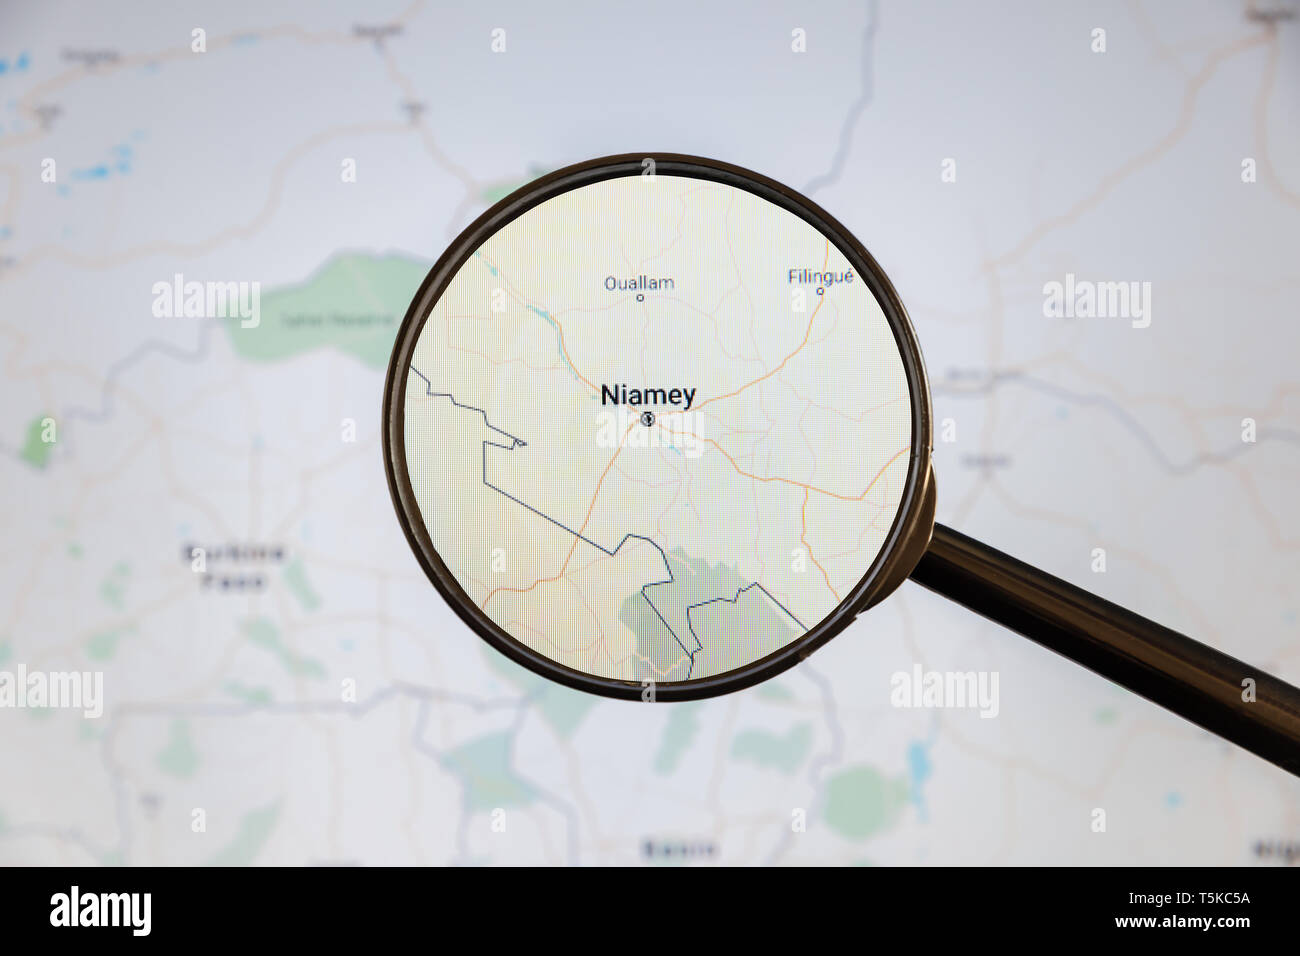 Niamey, Niger. Une carte politique. Concept d'illustration de visualisation de la ville sur l'écran grâce à une loupe. Banque D'Images